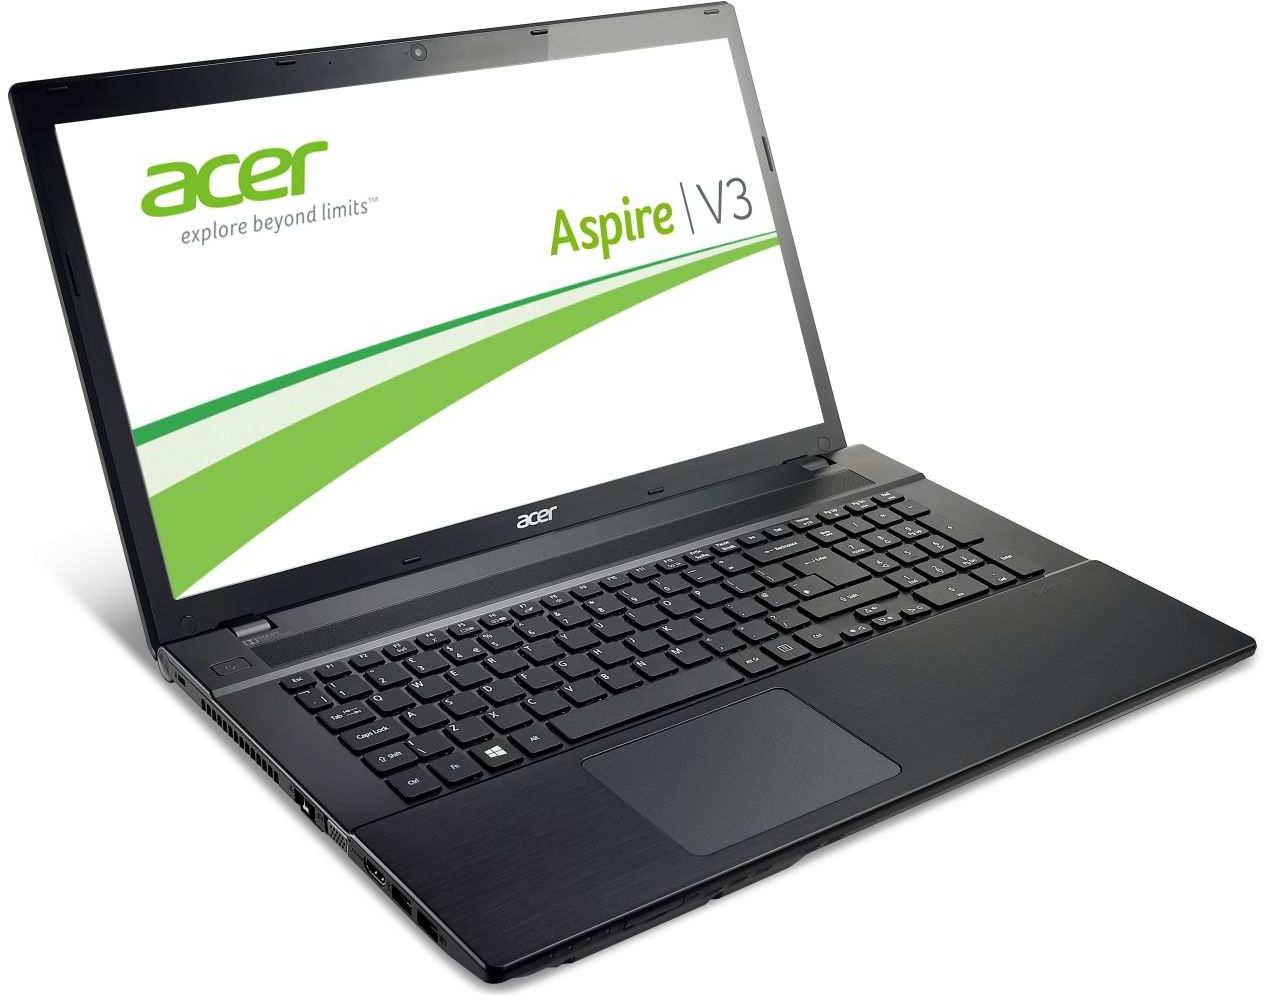   Acer Aspire V3-772G-747a161.26TBDCakk (NX.MMCER.010)  1